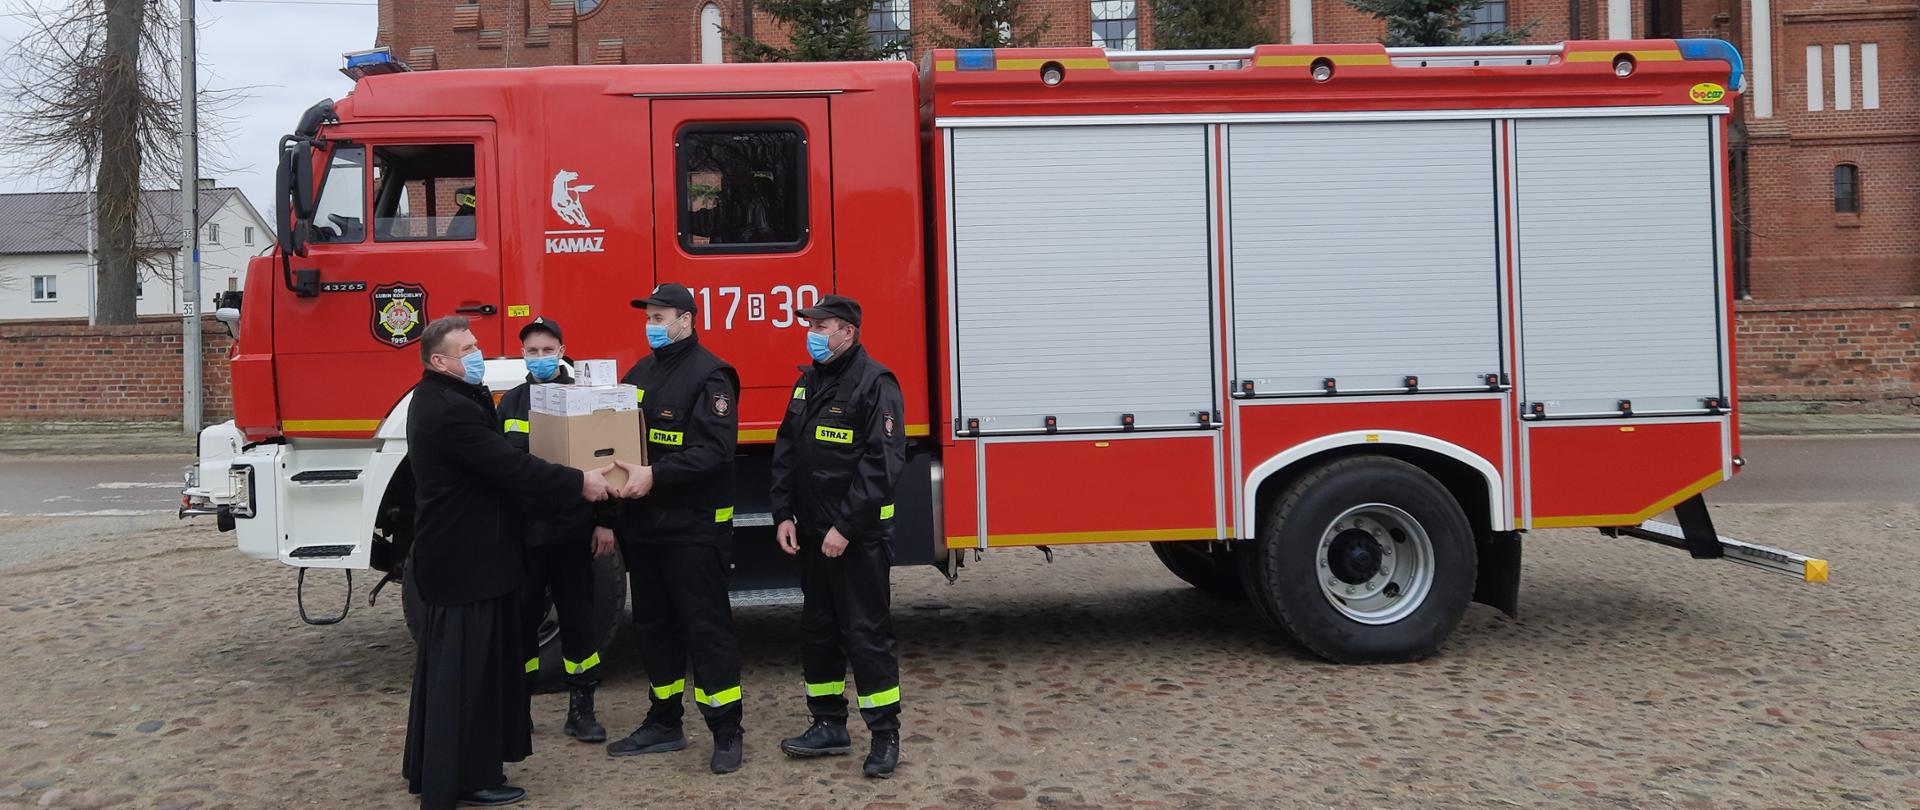 Strażacy przekazują maseczki ochronne księdzu. Zdjęcie wykonane przy wozie strażackim.